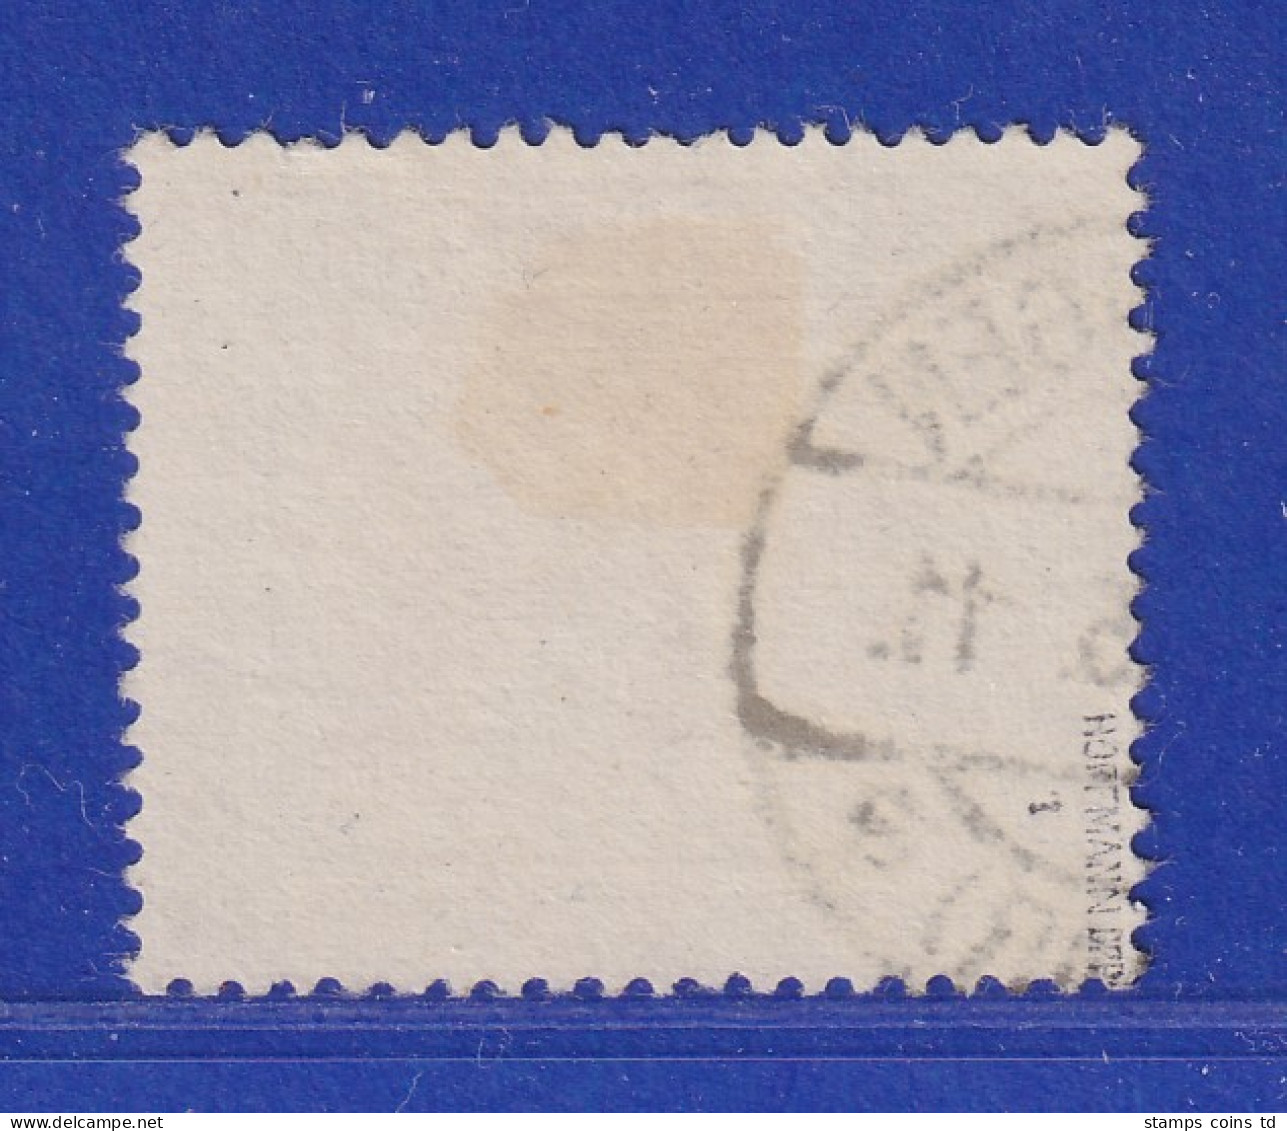 Saar 1923 Mi.-Nr. 100 Mit PLF I:  Rechtes C Mit Cedille, Gpr. HOFFMANN BPP  - Used Stamps